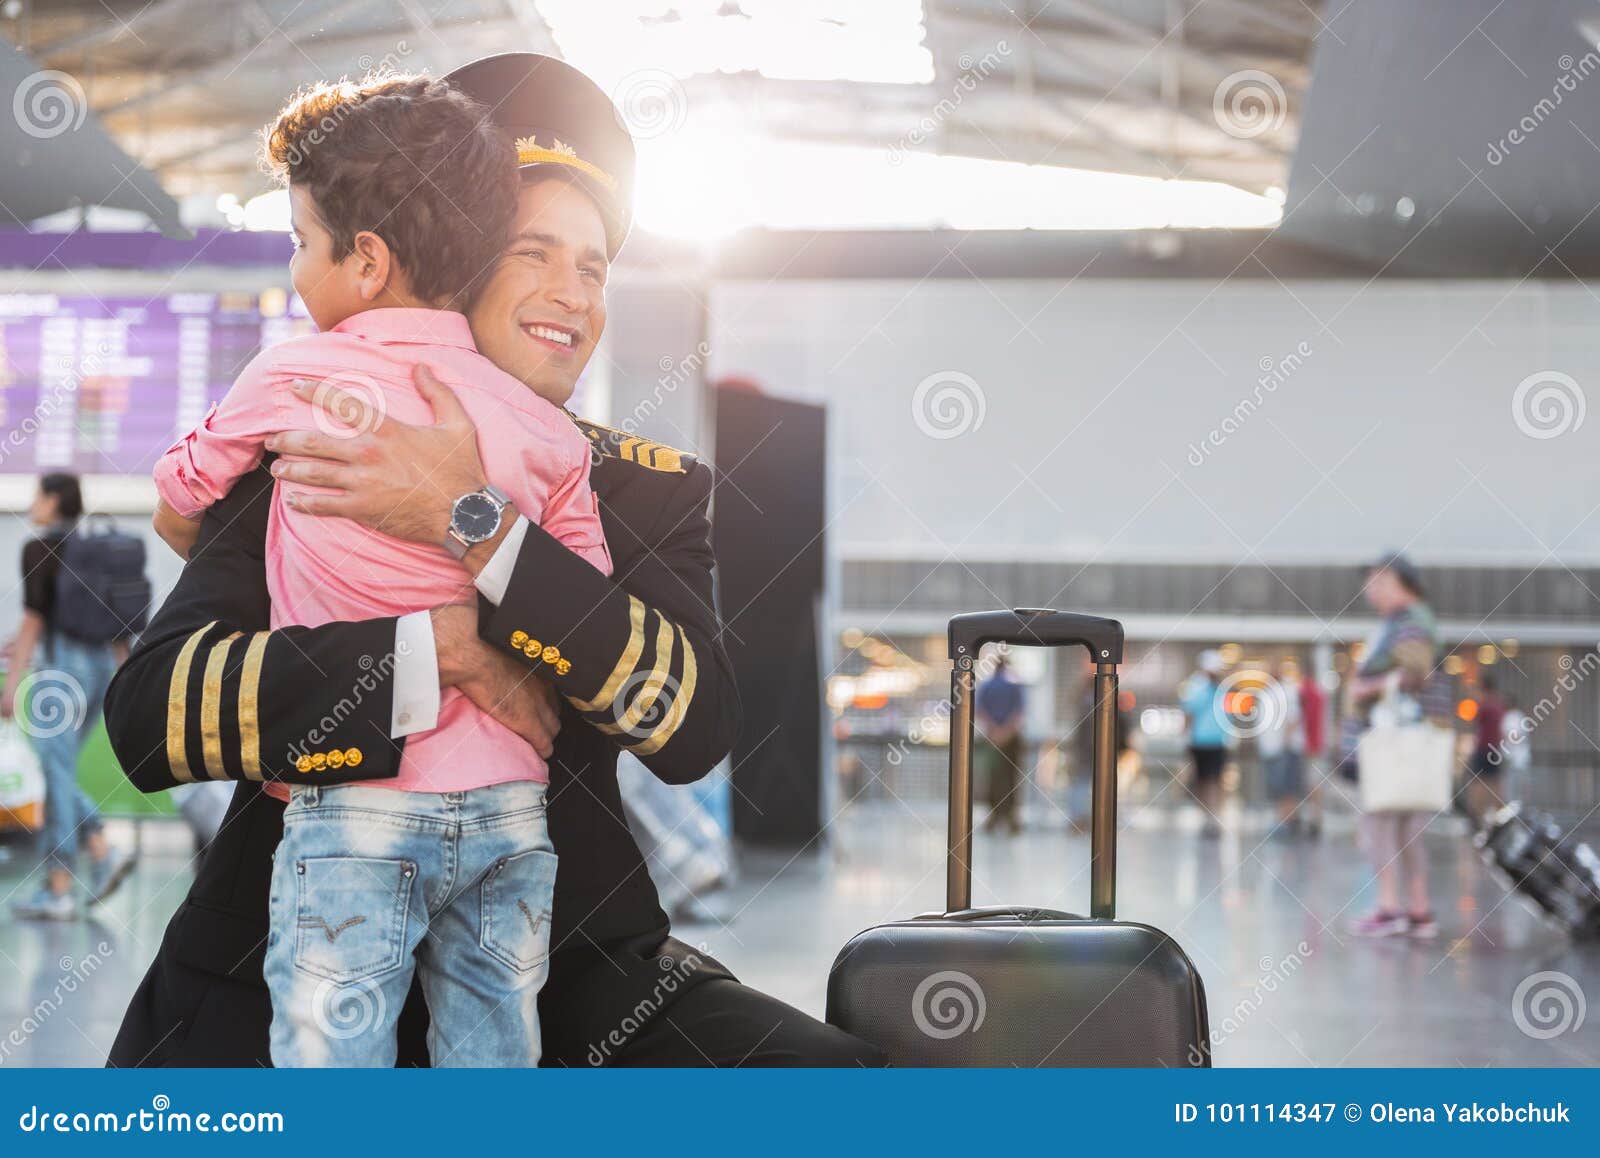 Chłopiec spotkania lotnik w lotnisku. Jestem w ten sposób szczęśliwy widzieć ciebie Pilot jest kucający jego syna i ściskający On patrzeje na boku z uśmiechem Odbitkowa przestrzeń na prawej stronie